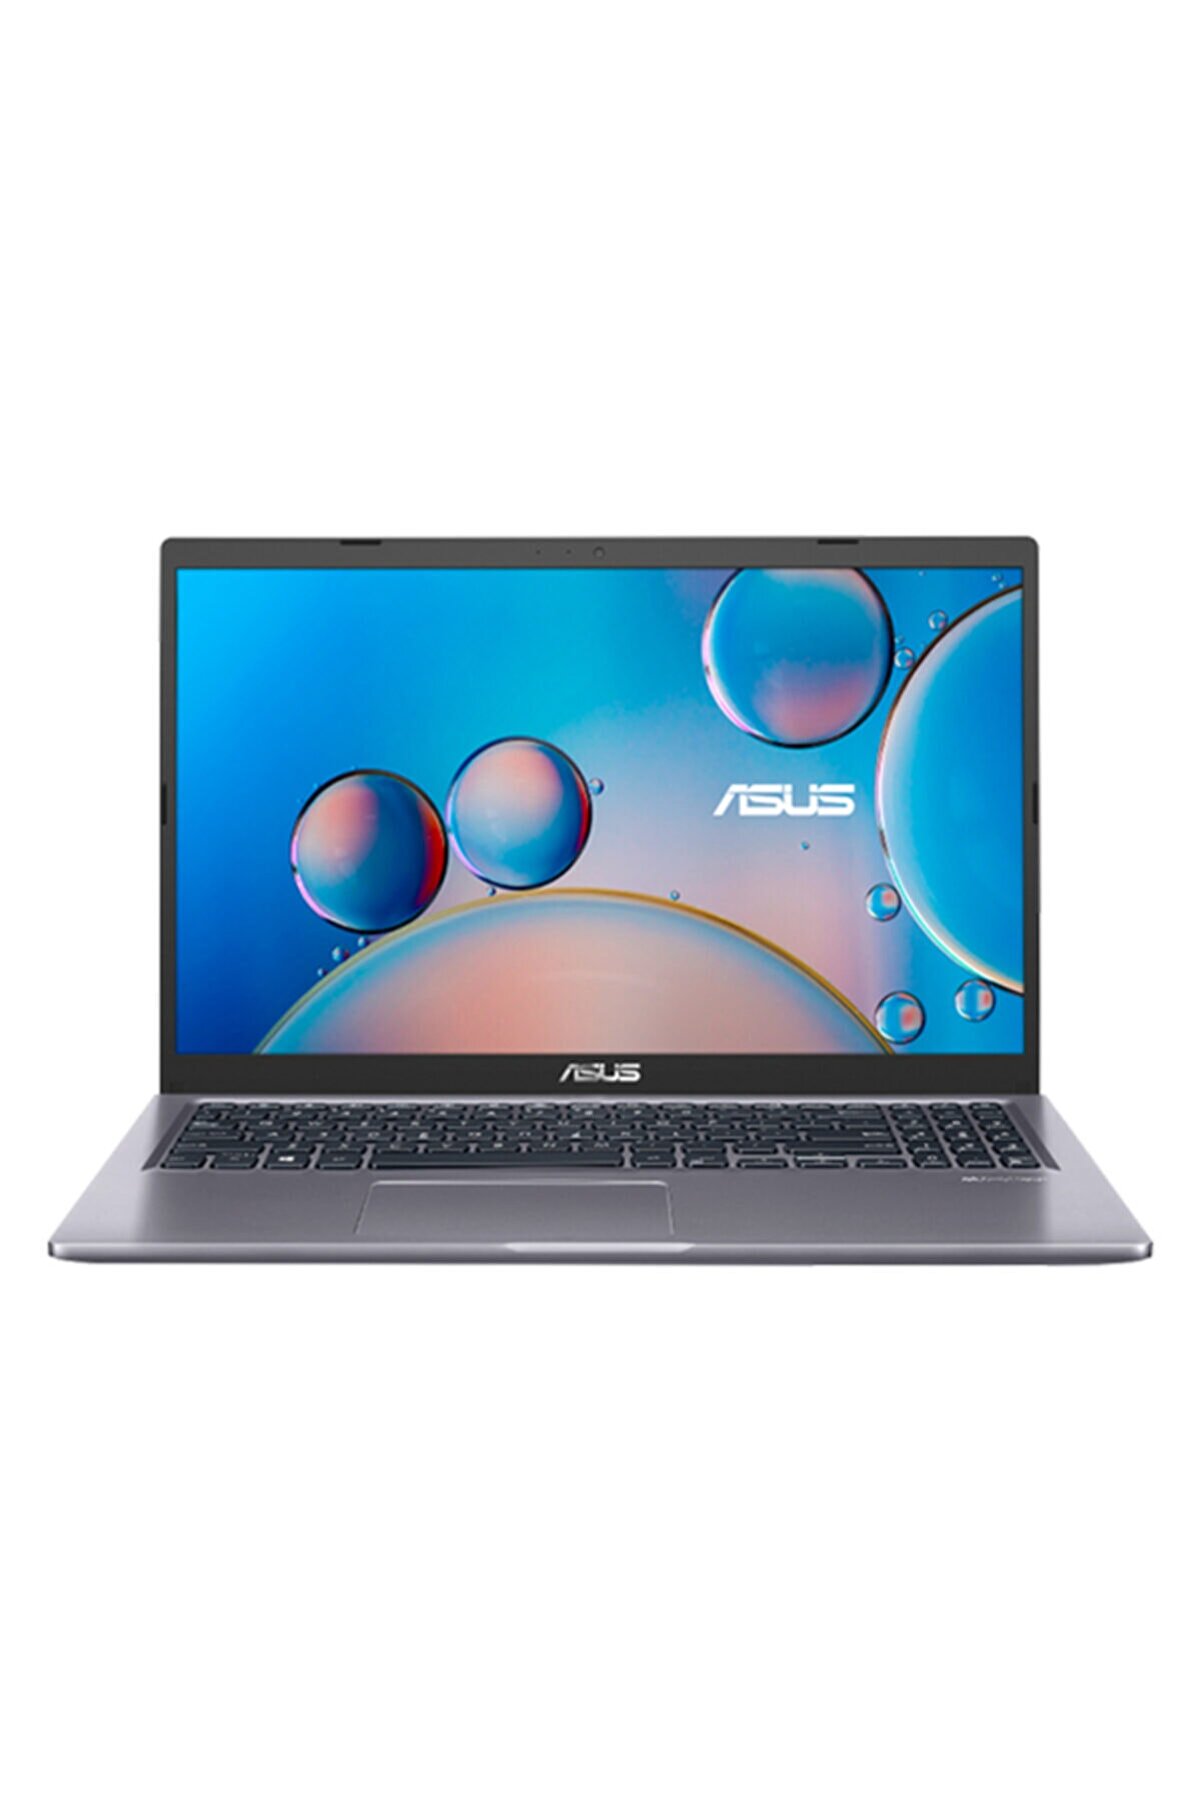 ASUS Laptop X515jf-ej259t I5-1035g1u 8gb Ram 256gb Ssd Mx130 2gb 15.6" Fhd W10 Notebook